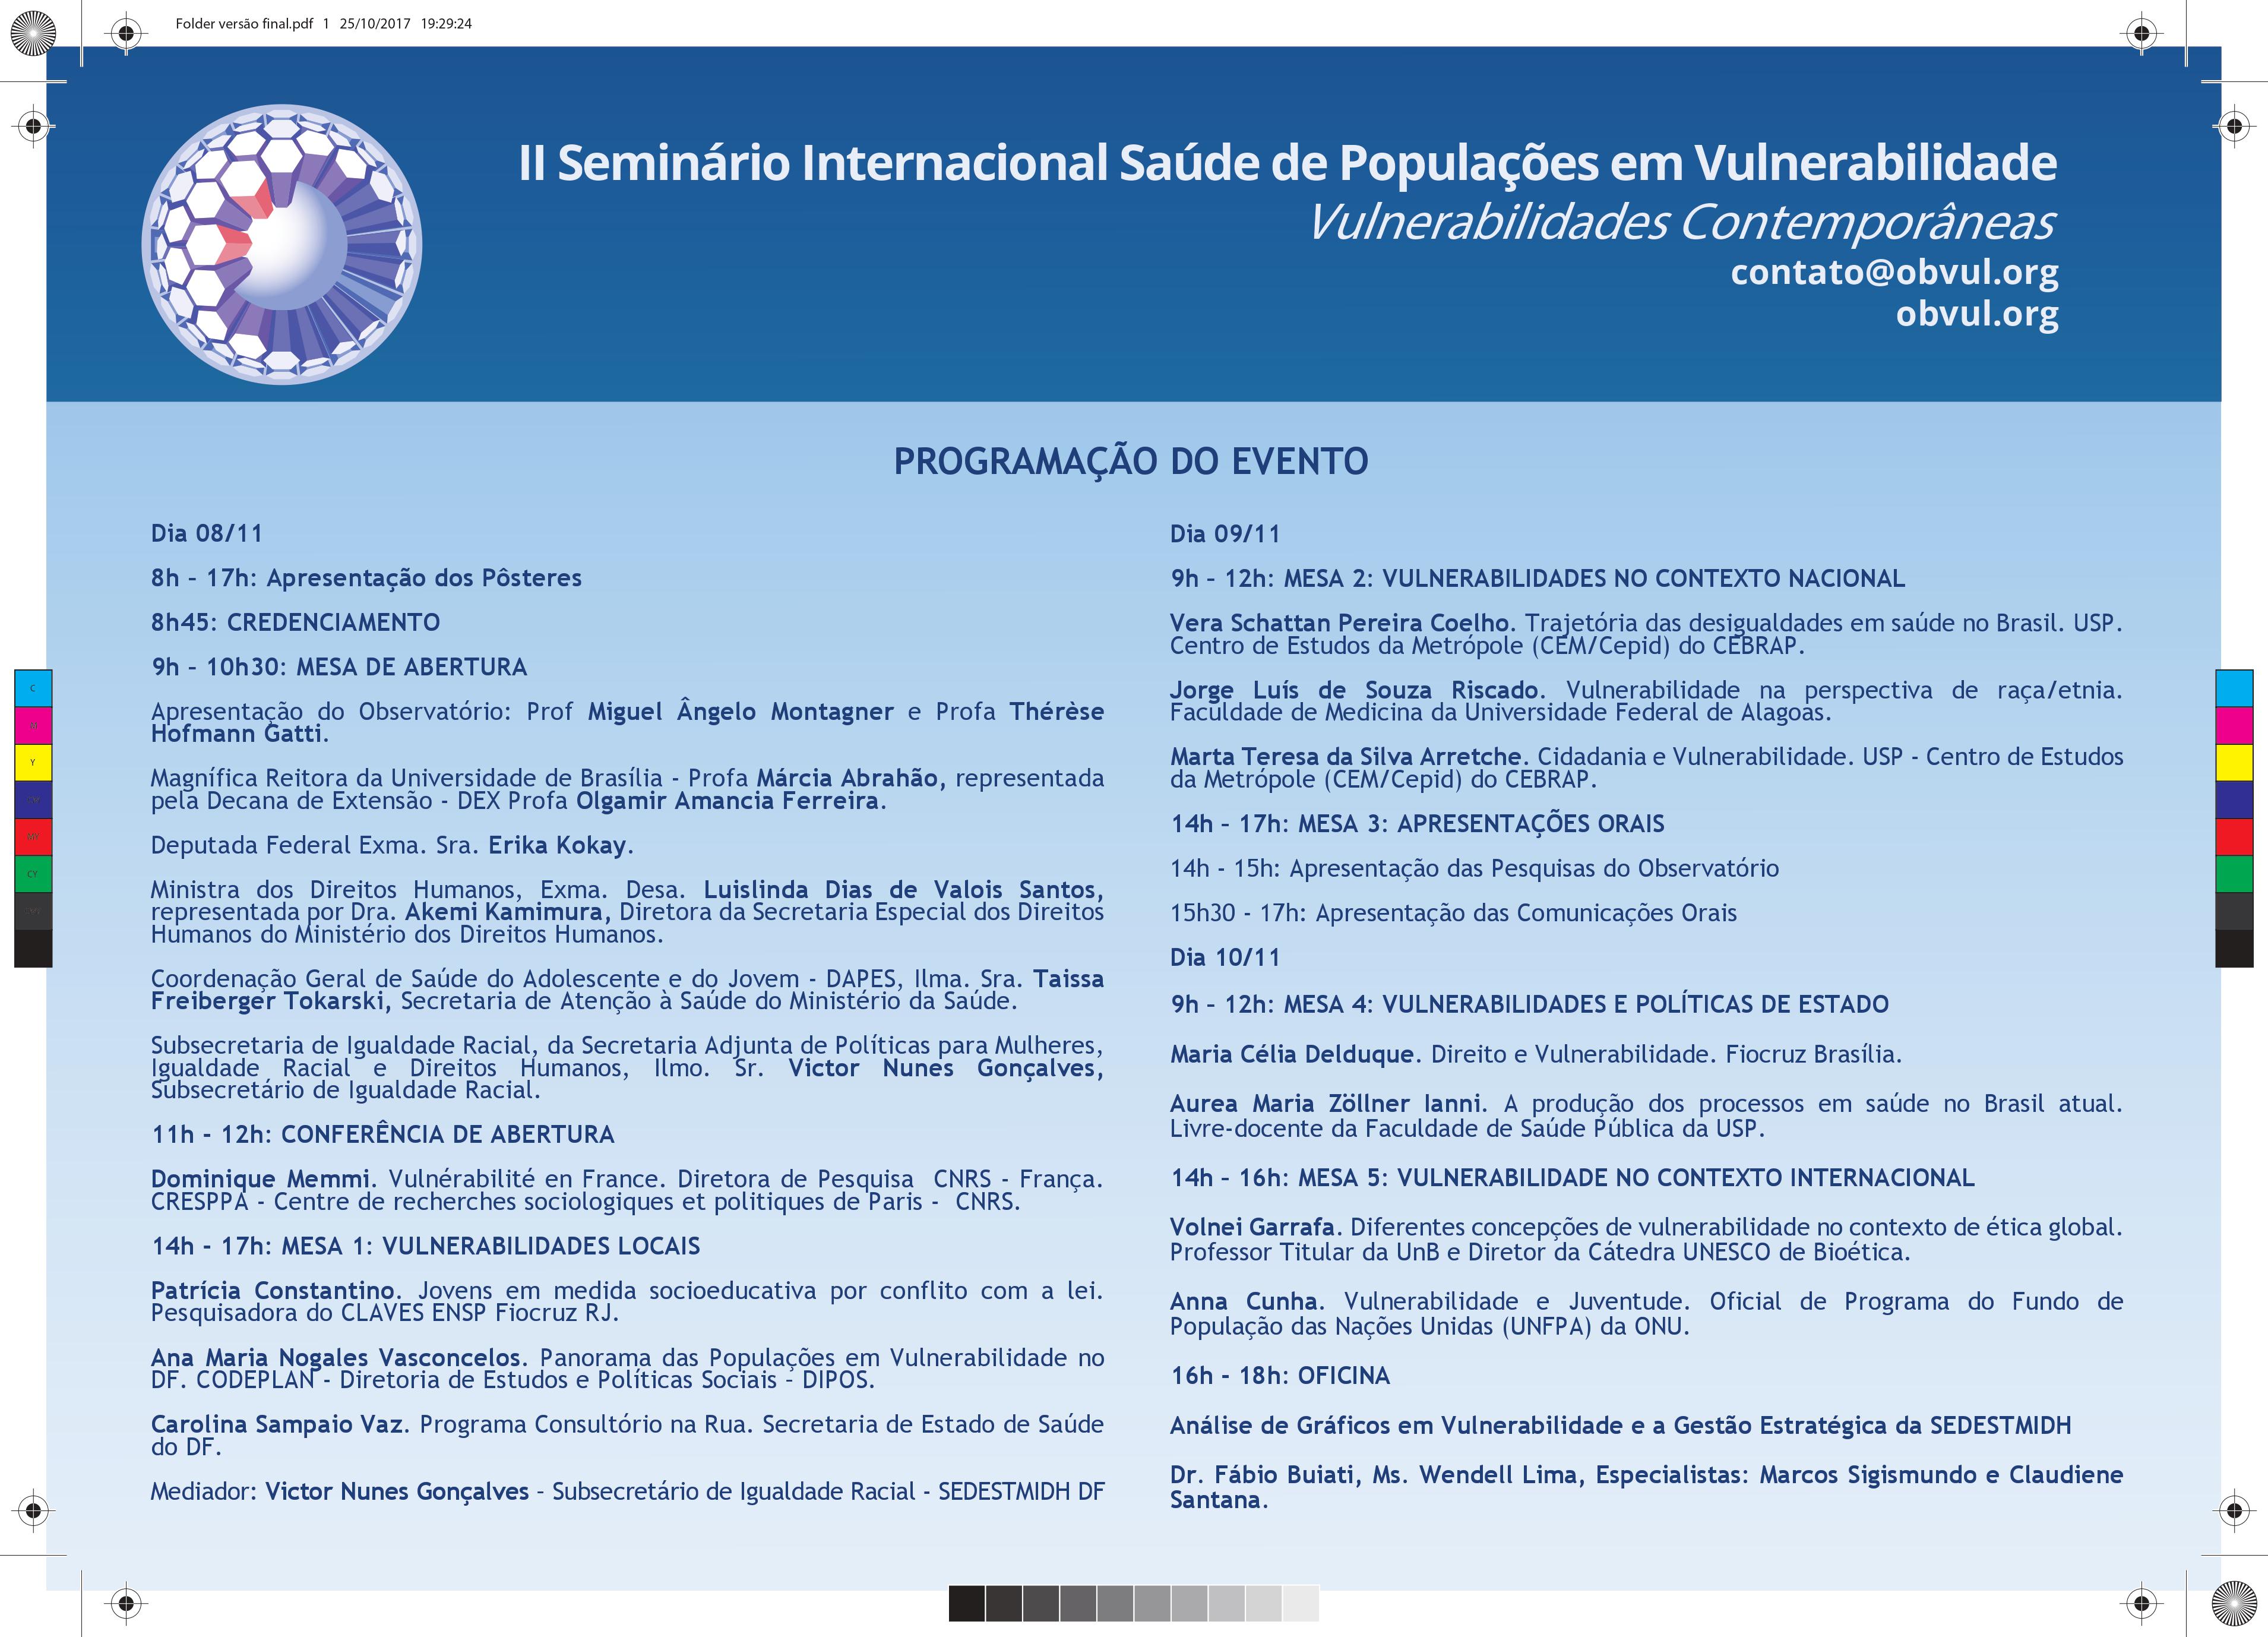 II Seminário Internacional de Saúde de Populações em Vulnerabilidade